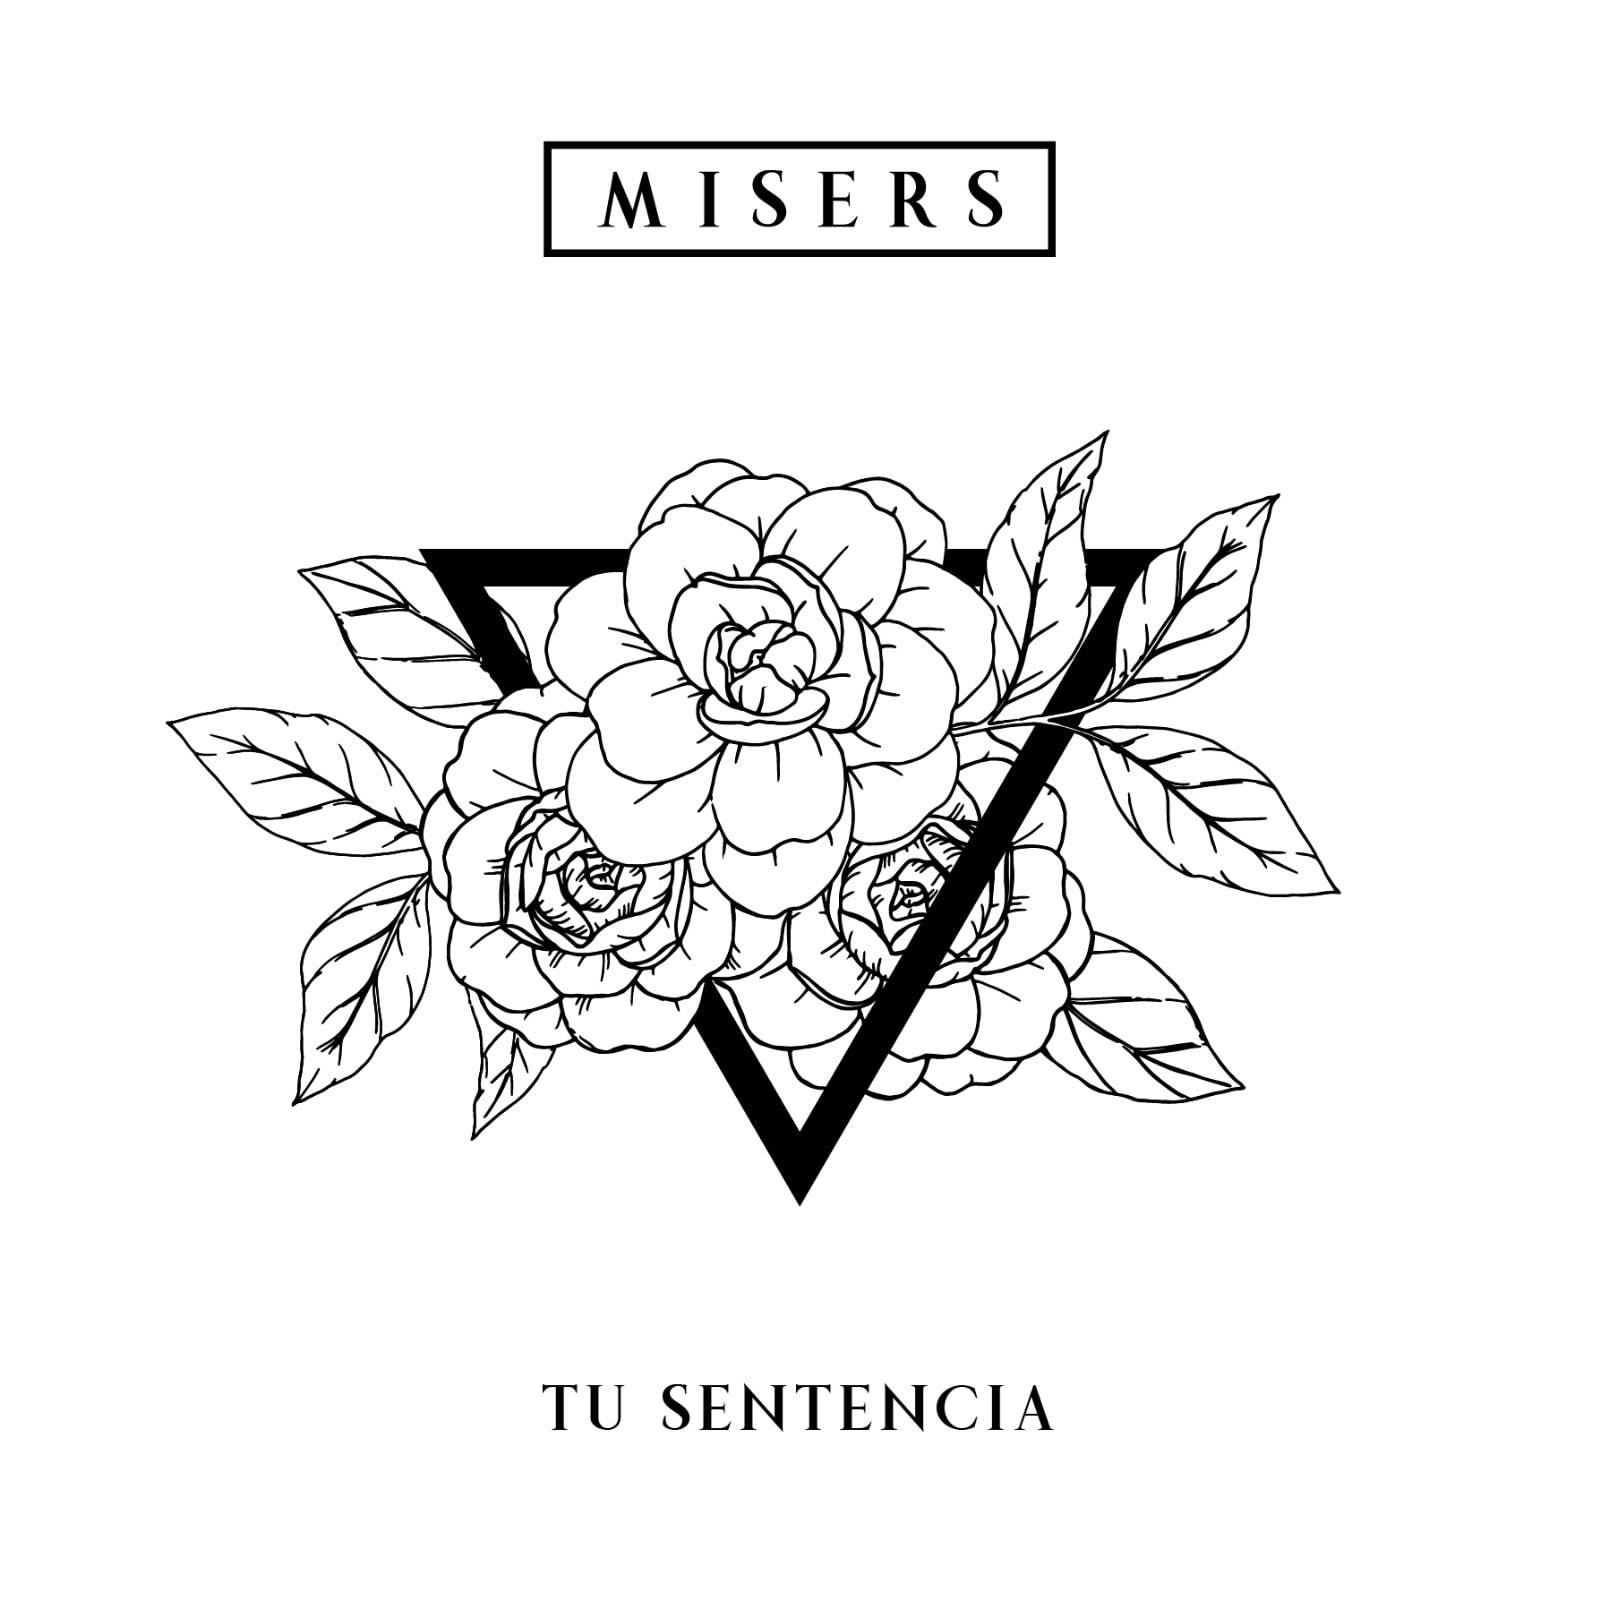 MISERS presentan el video-lyric de su tema “Tu Sentencia” y la portada del disco